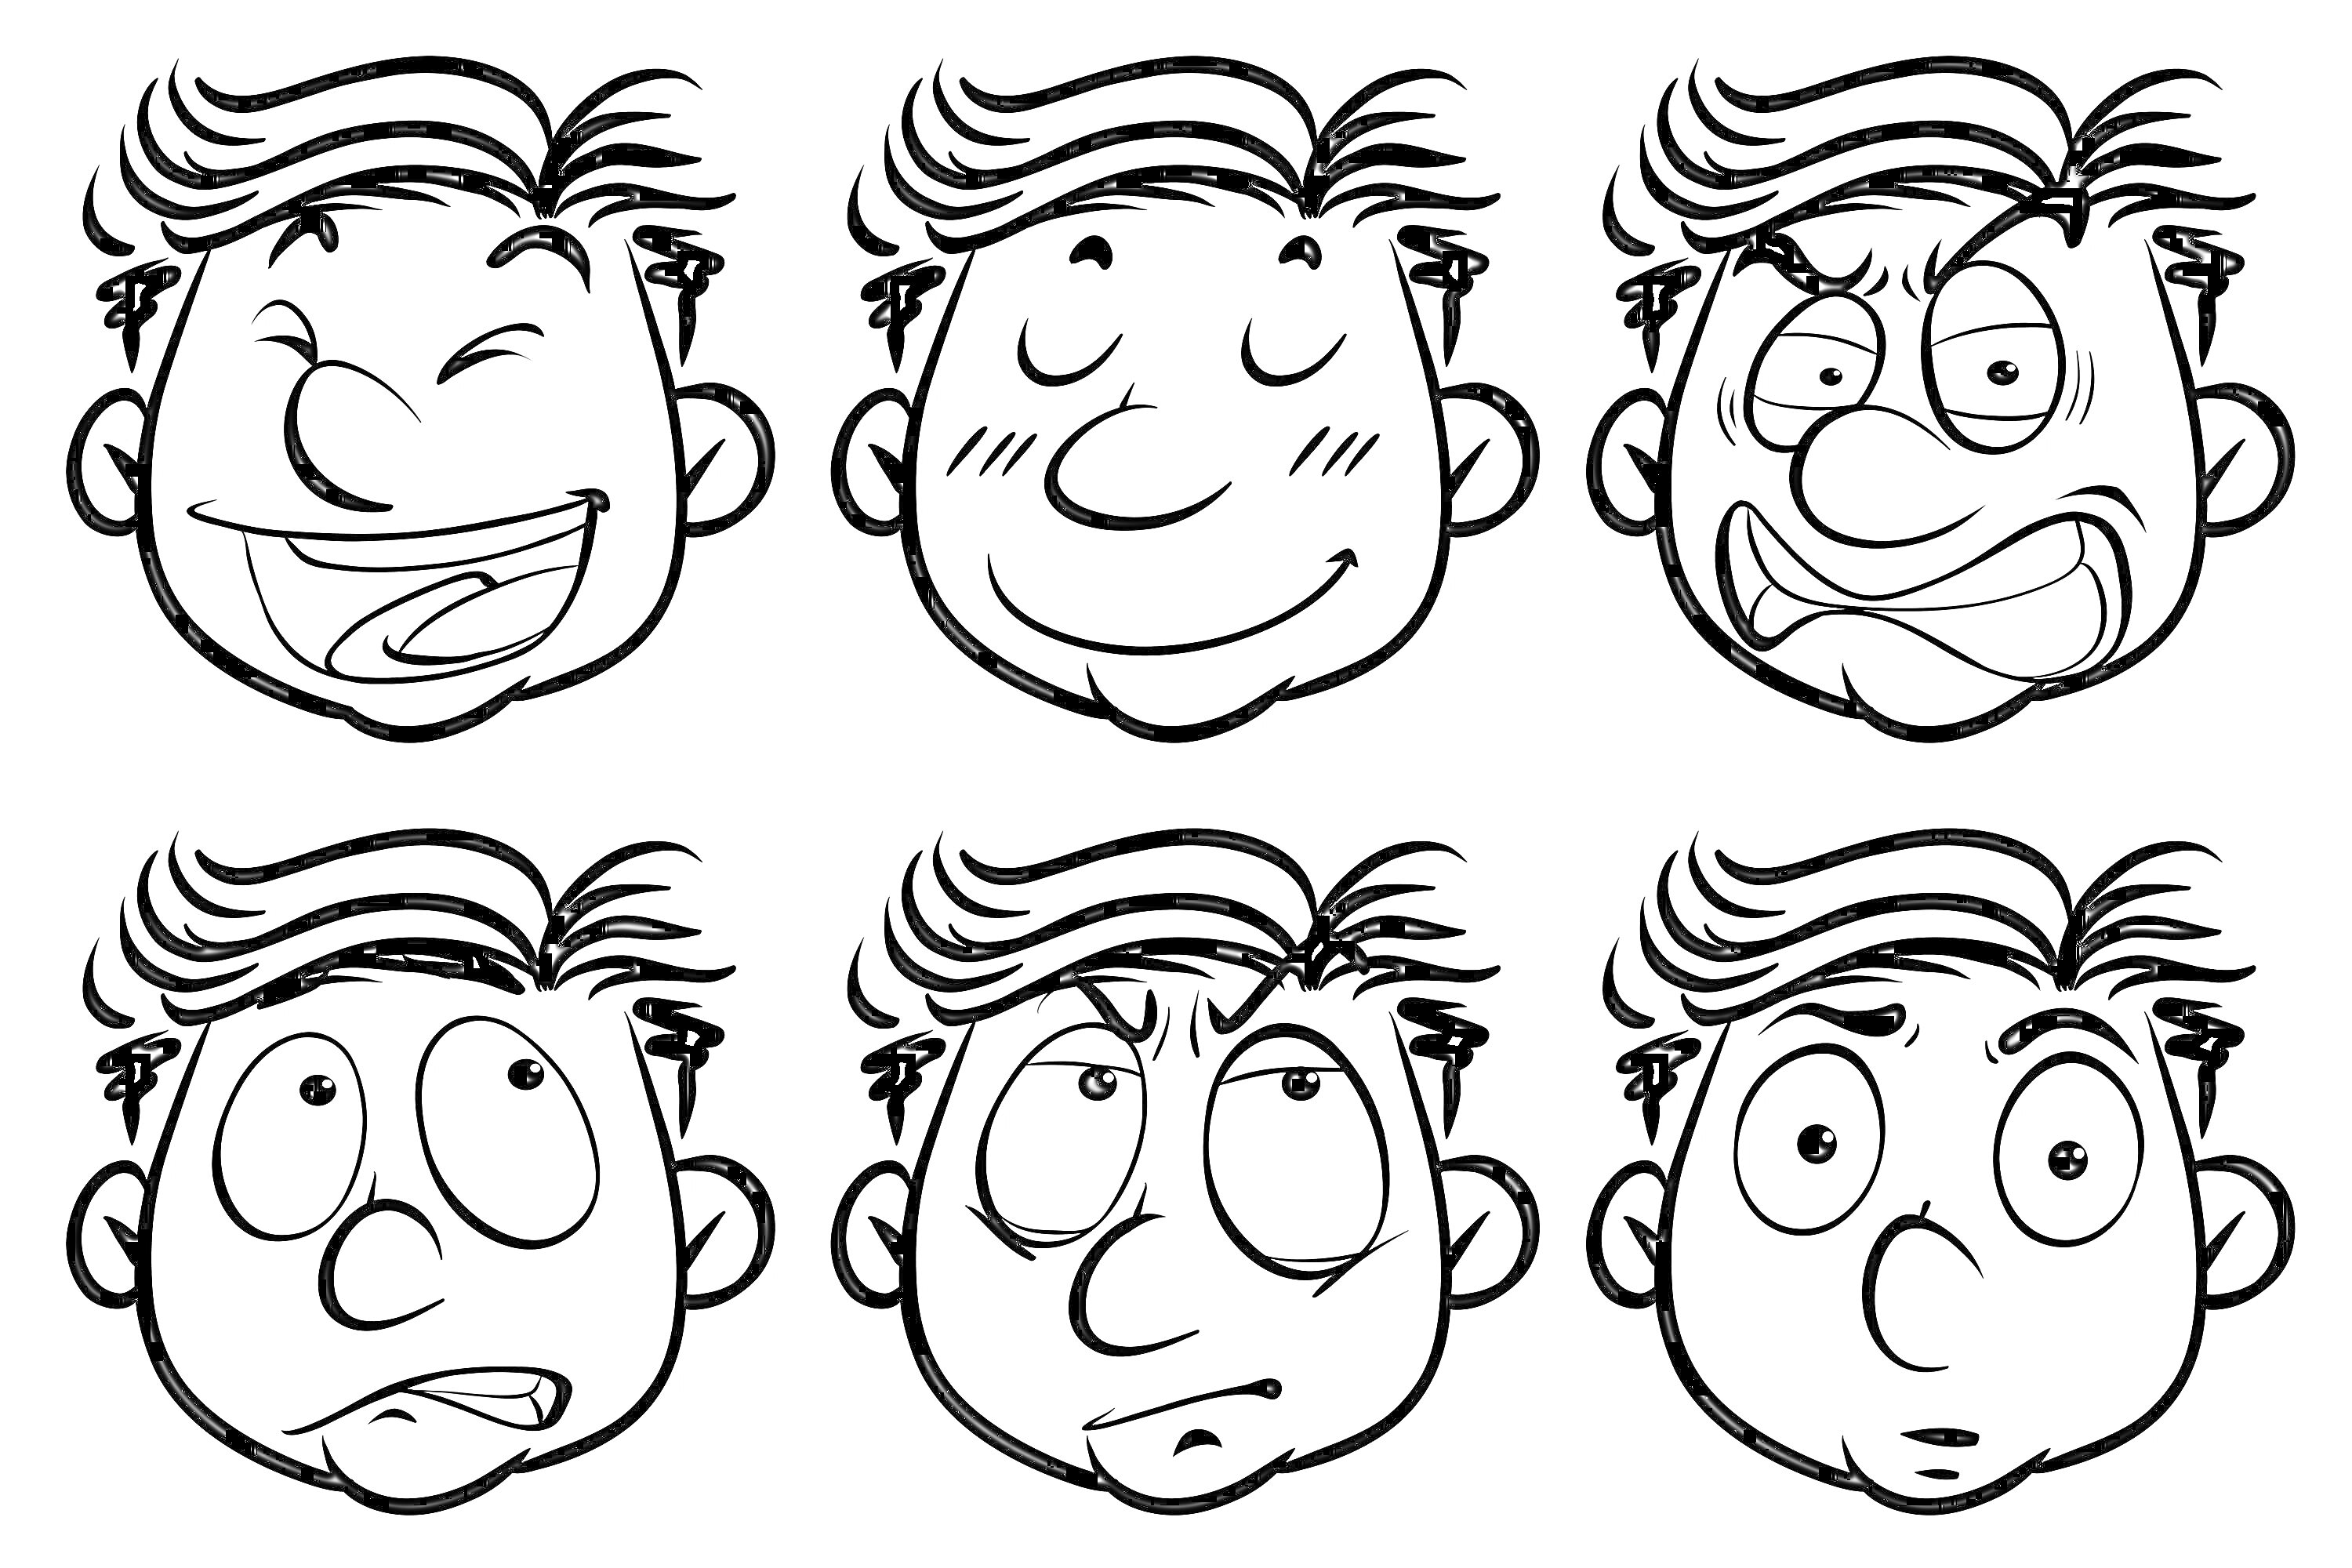 Раскраска Шесть лиц с разными эмоциями: смех, спокойствие, злость, удивление, задумчивость, испуг